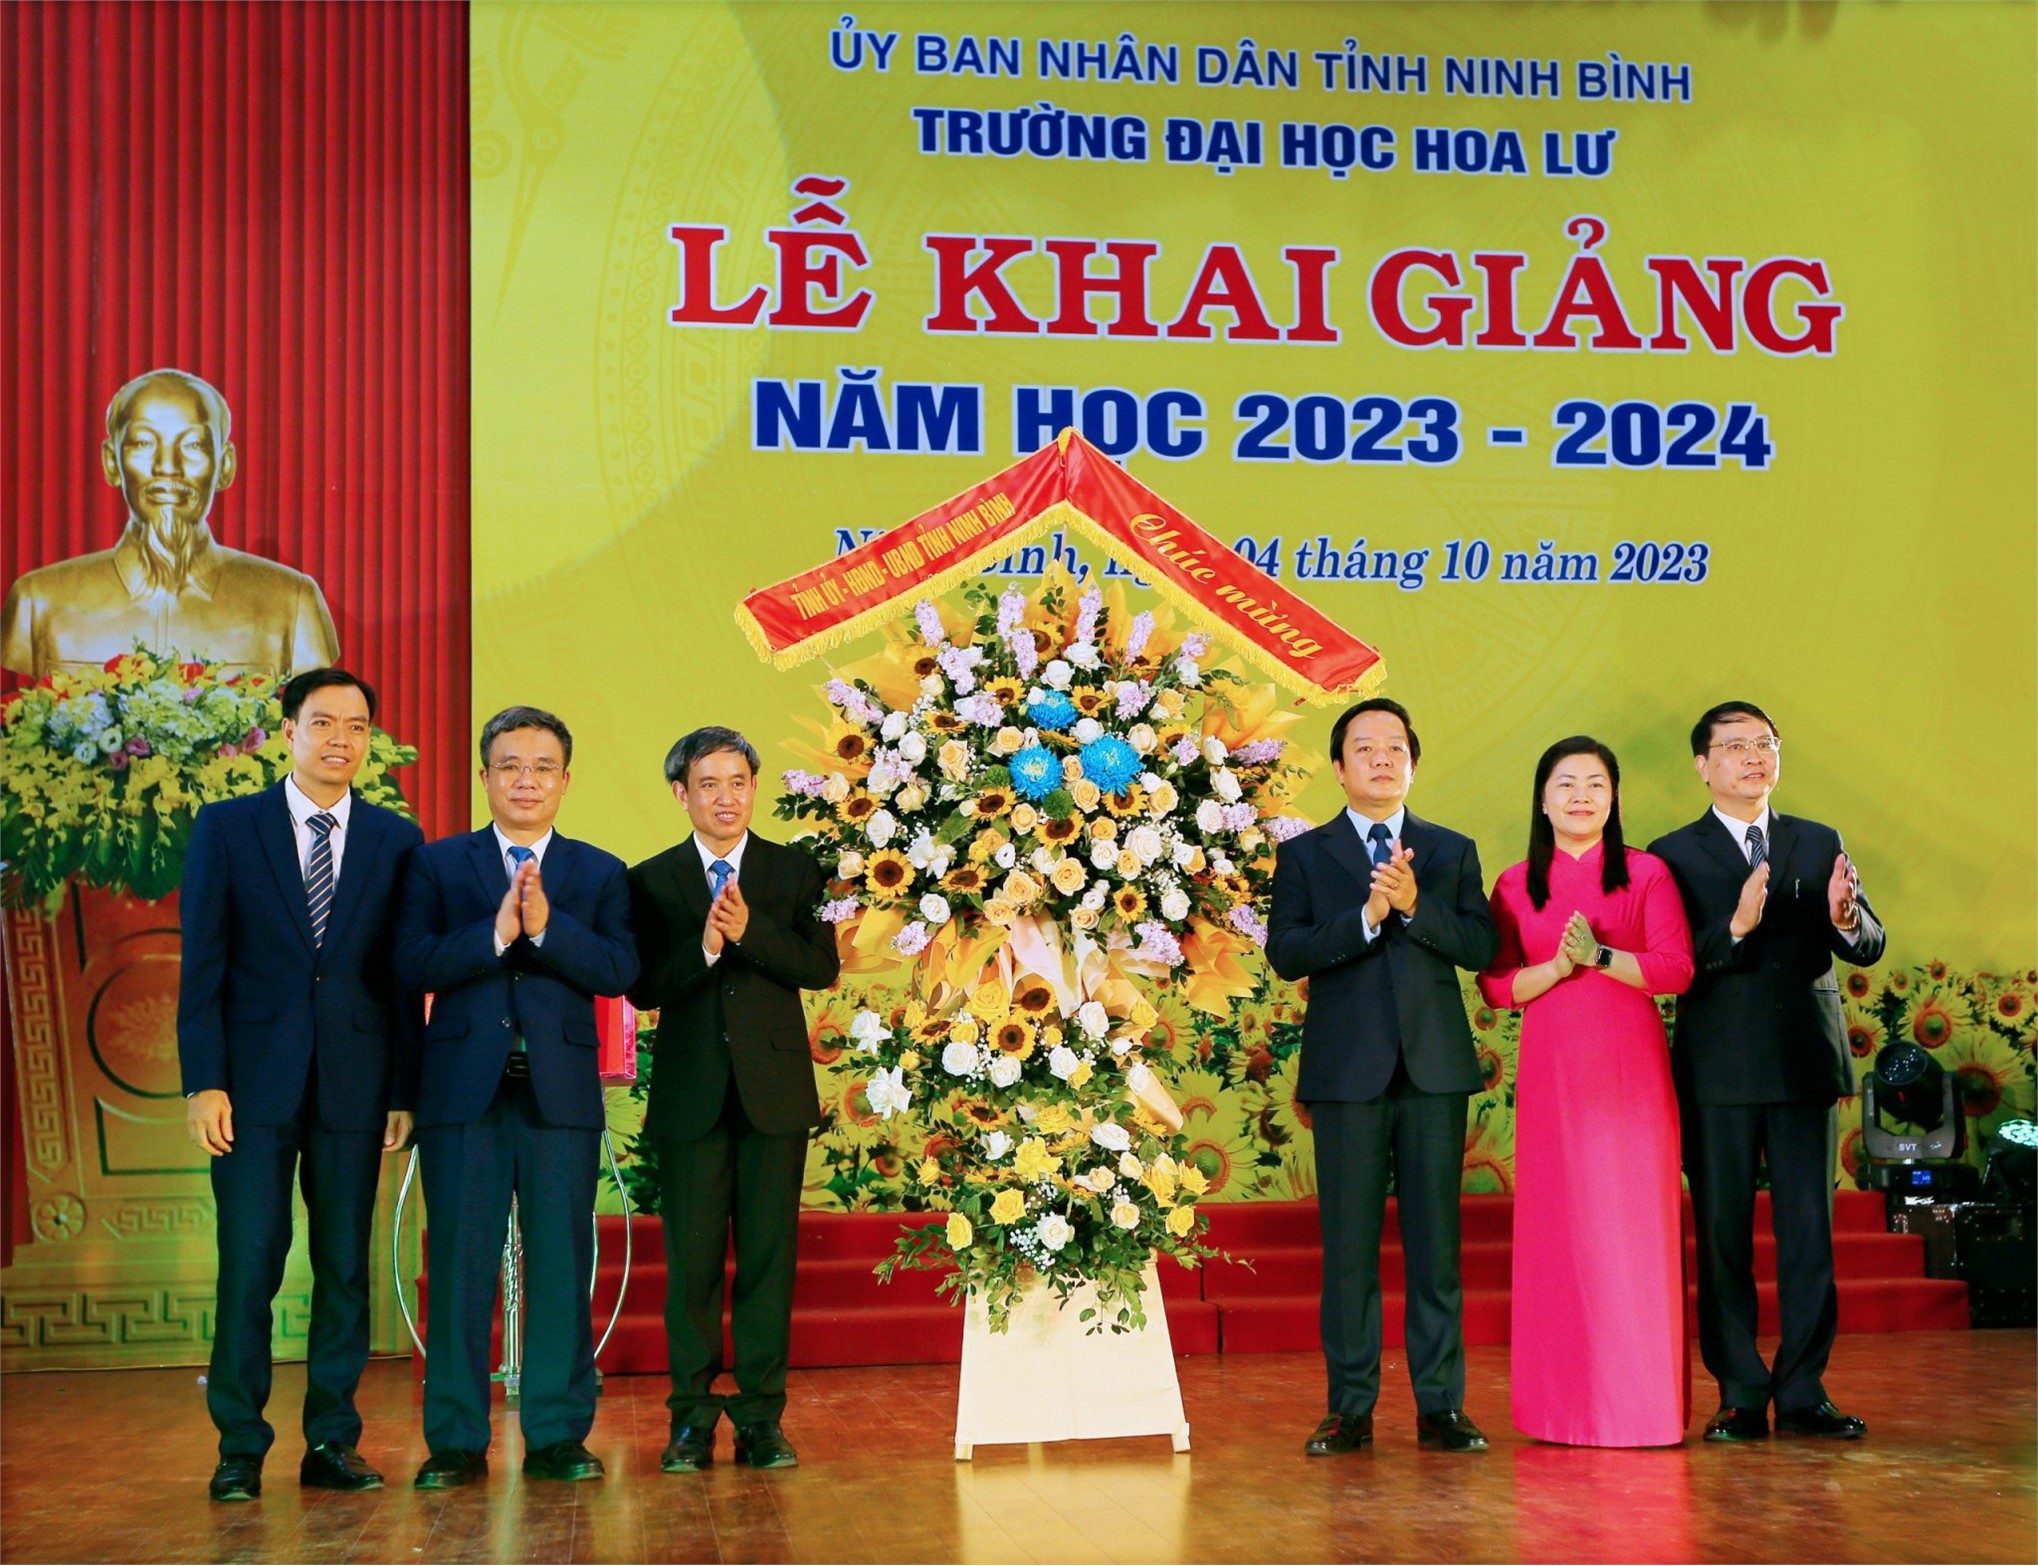 Đồng chí Phạm Quang Ngọc, phó bí thư tỉnh uỷ, chủ tịch UBND tỉnh tặng hoa và chúc mừng nhà trường